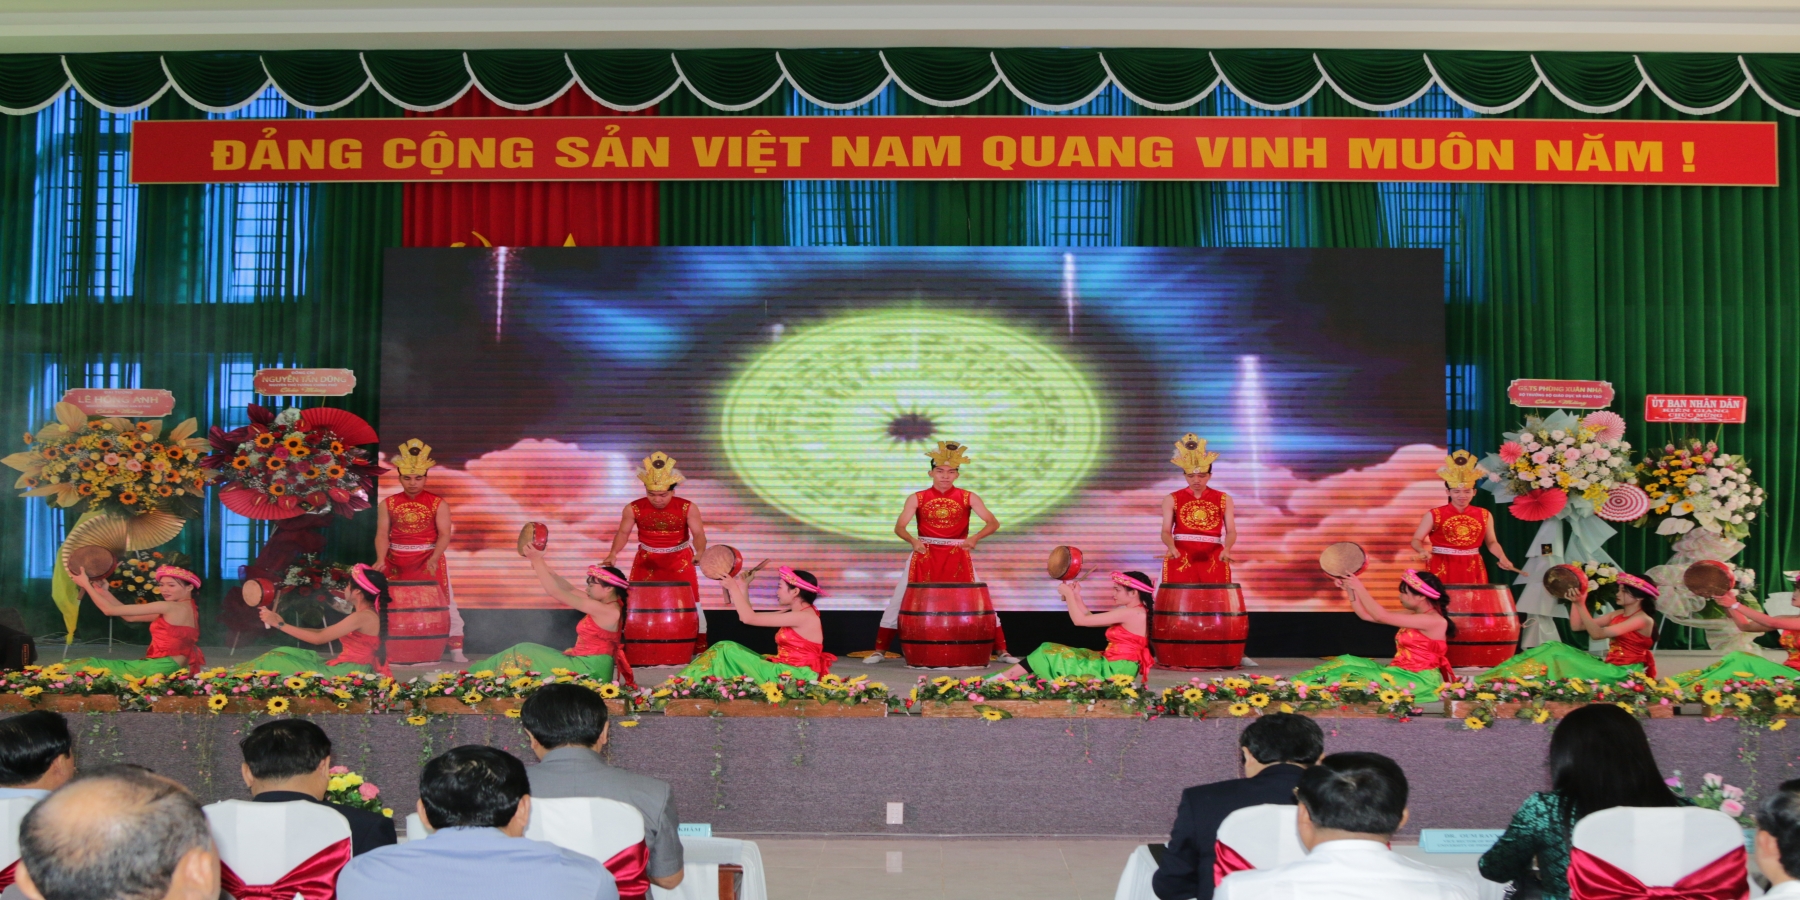 Trường Đại học Kiên Giang từng bước xây dựng giá trị cốt lõi: “Tận tâm – Uy tín – Chất lượng – Hội nhập” sau 5 năm thành lập